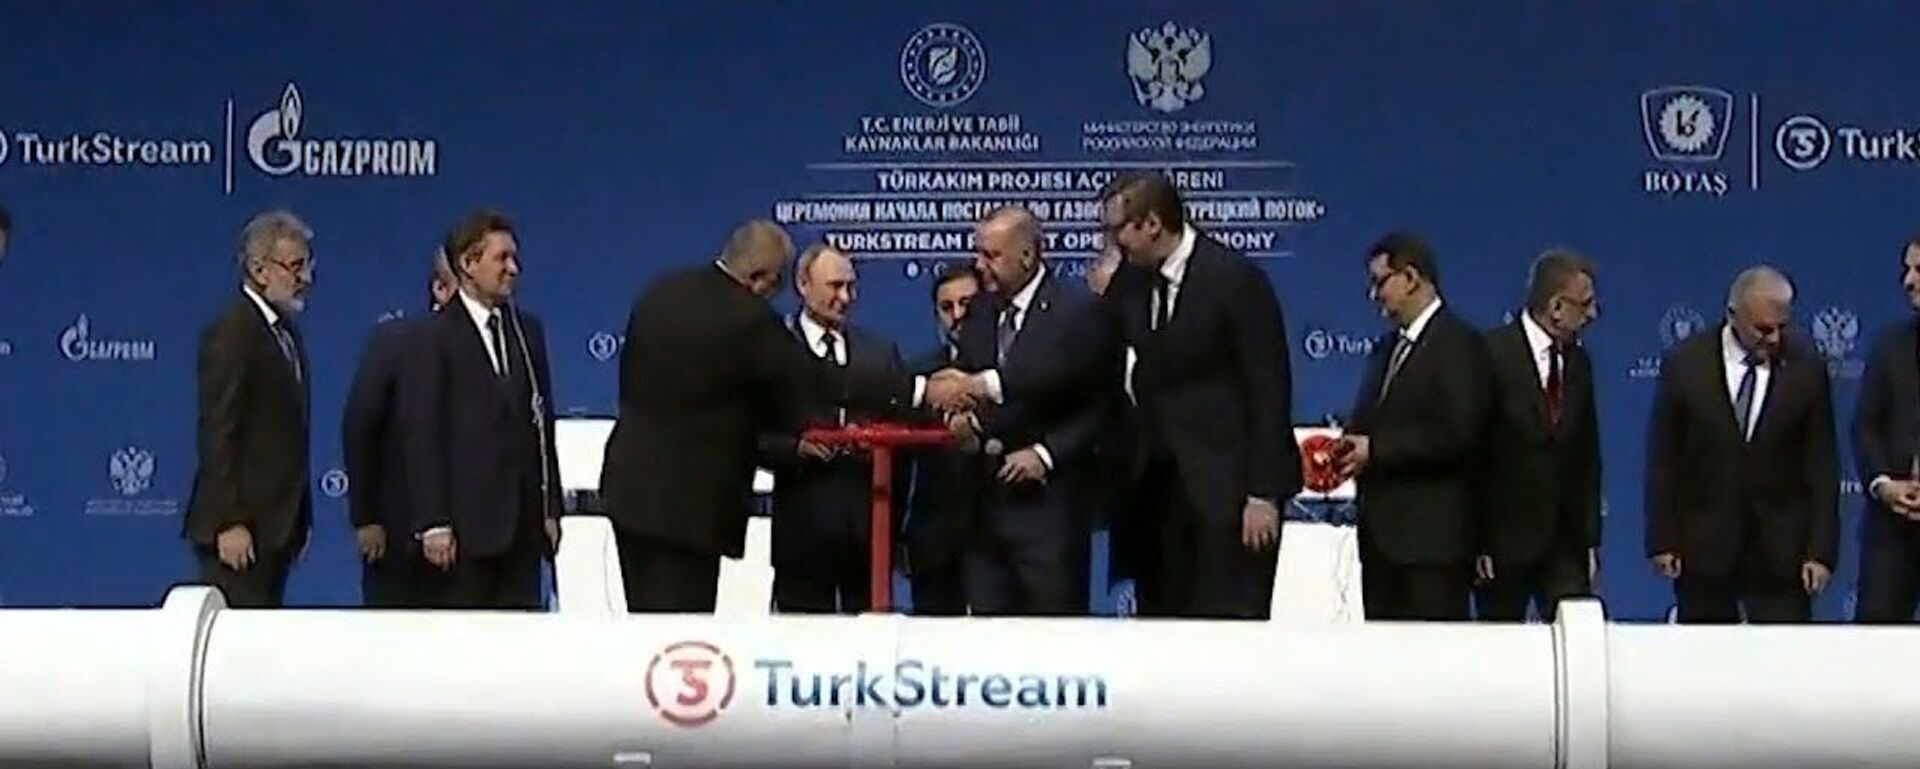 Путин и Эрдоган запустили Турецкий поток - Sputnik Латвия, 1920, 09.01.2020